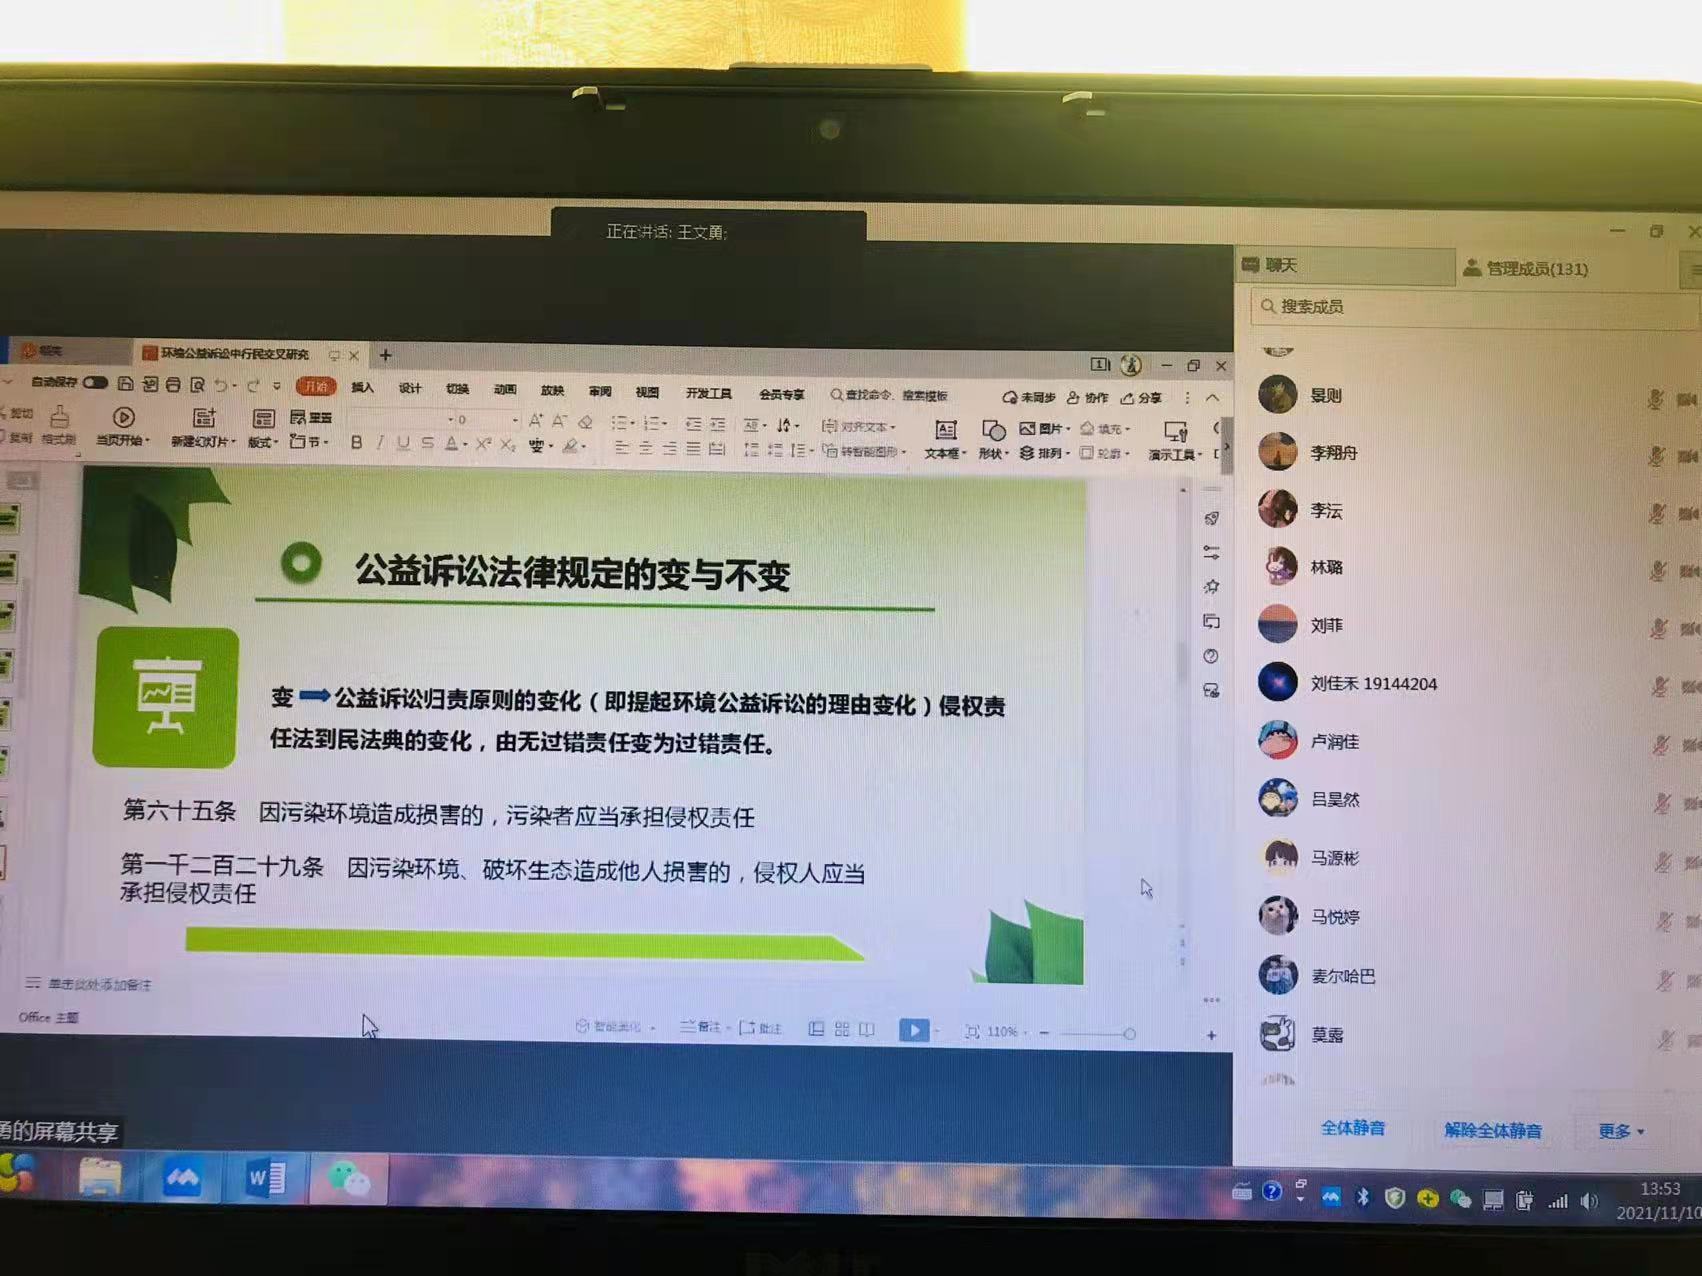 绿会法律顾问在北京工业大学做公益诉讼报告3.jpg